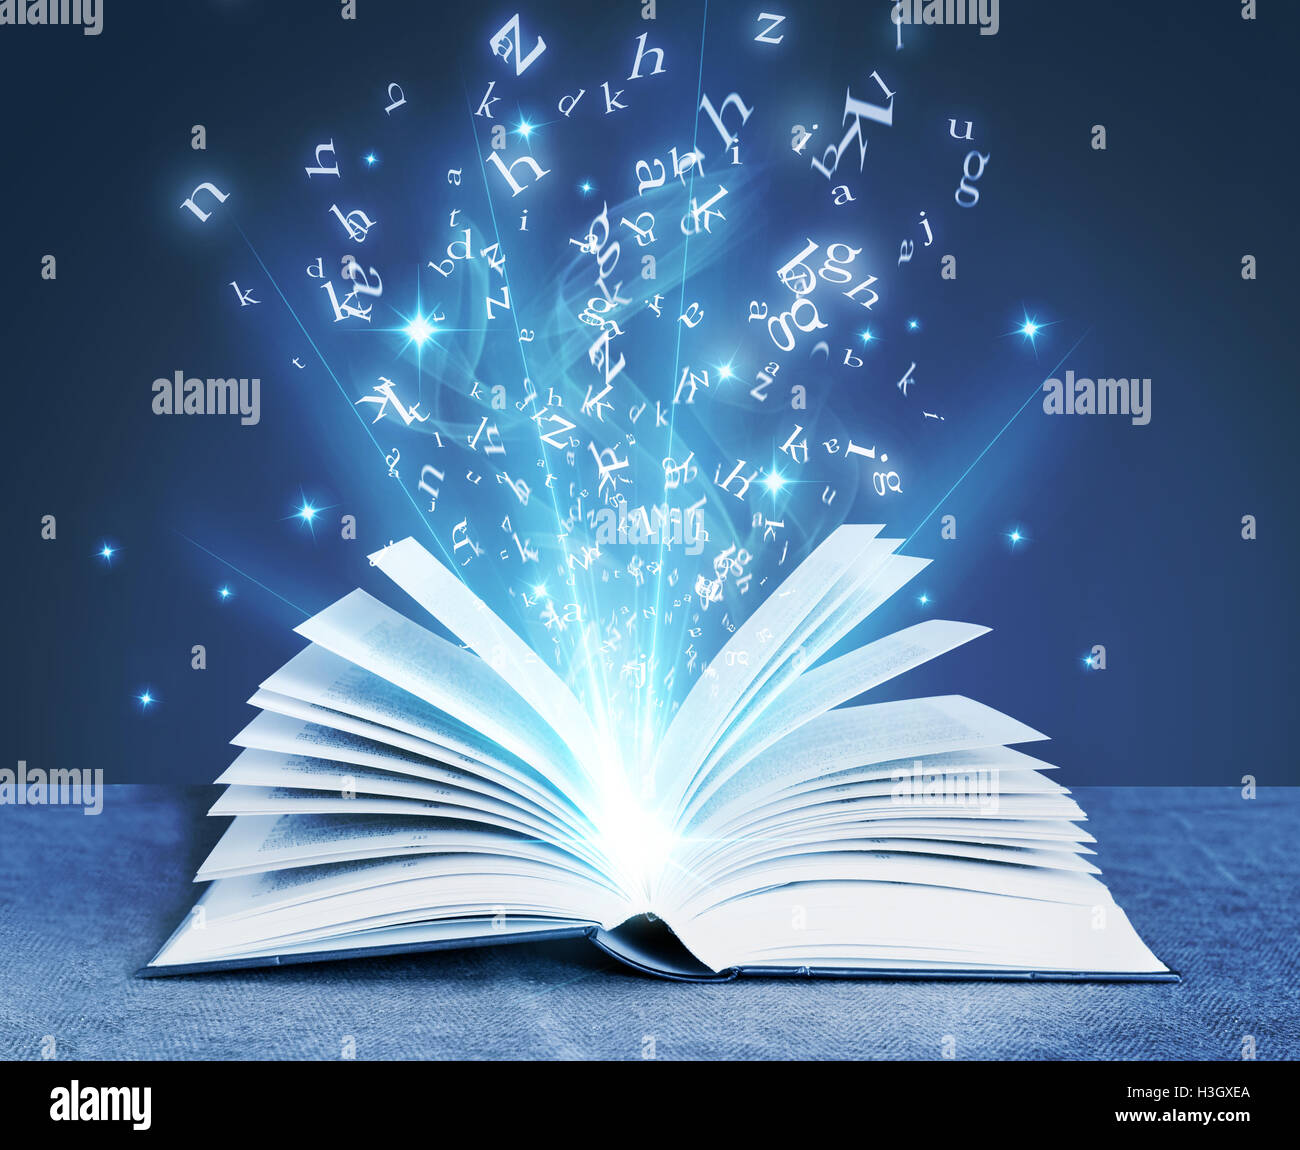 Libro magico immagini e fotografie stock ad alta risoluzione - Alamy